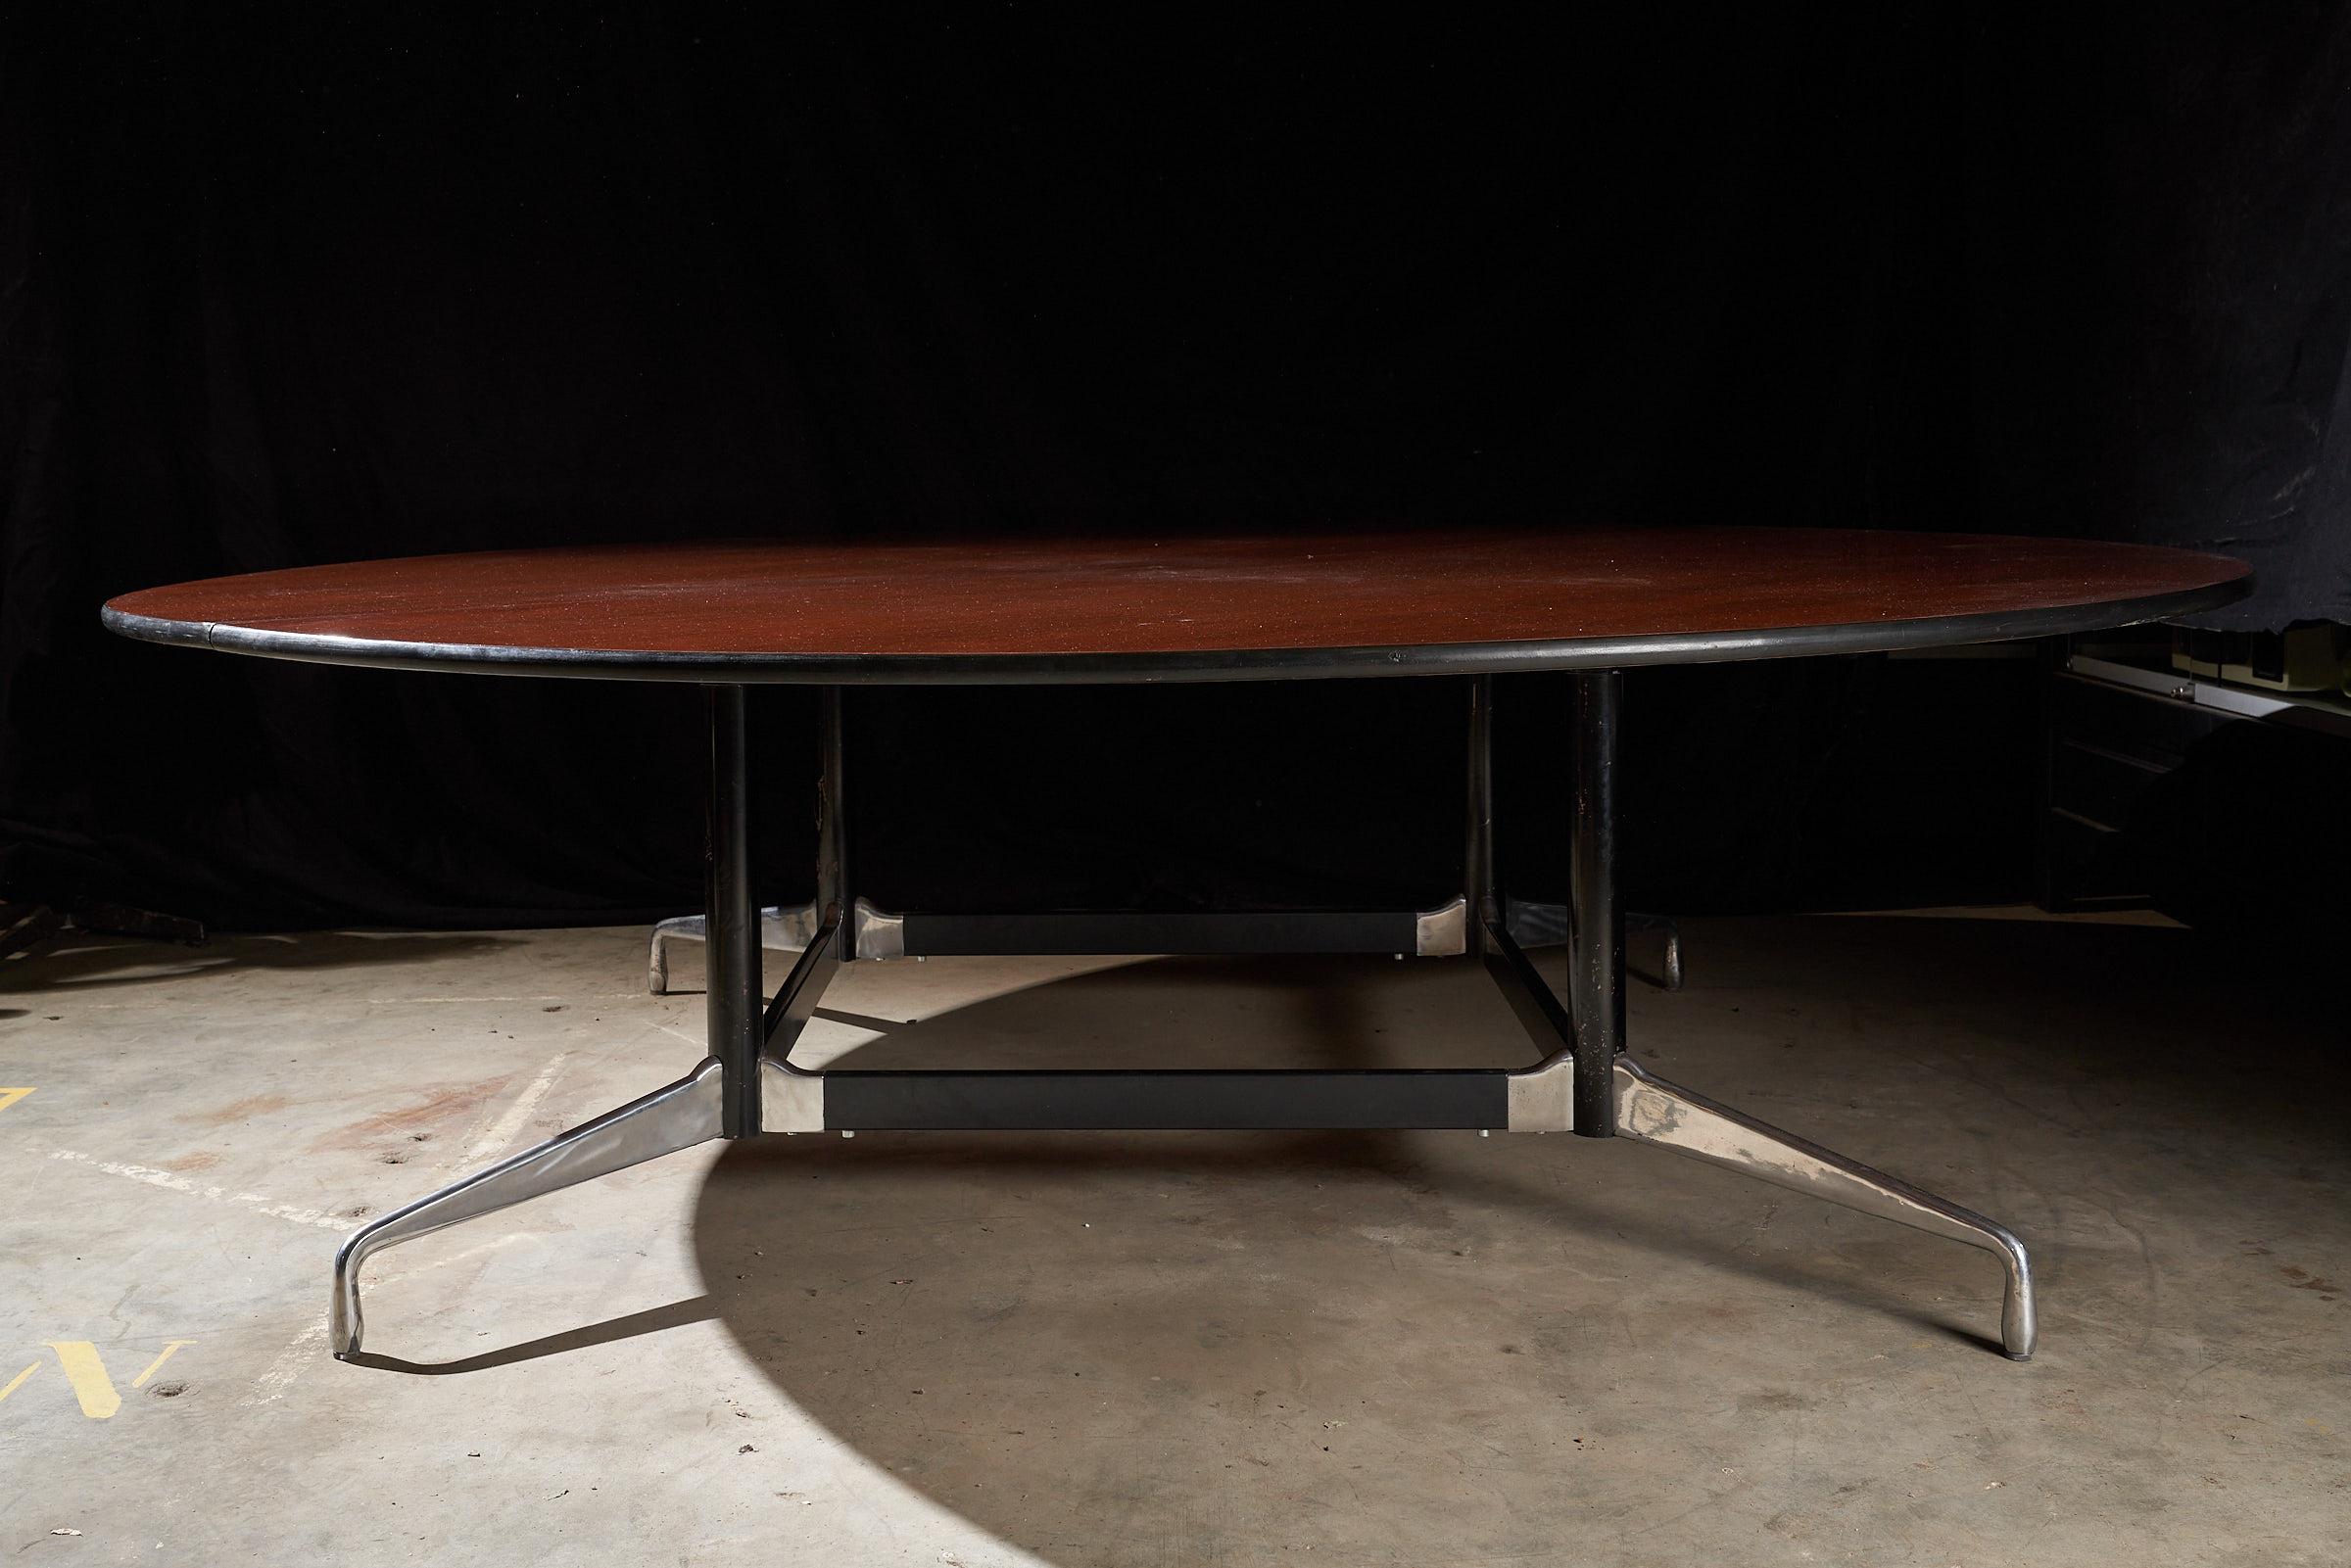 Voici la grande table de conférence de Herman Miller Eames, une pièce maîtresse qui attire l'attention par sa taille impressionnante et son allure intemporelle. Le plateau de table en bois, présenté dans les photos ci-jointes, est dans un état